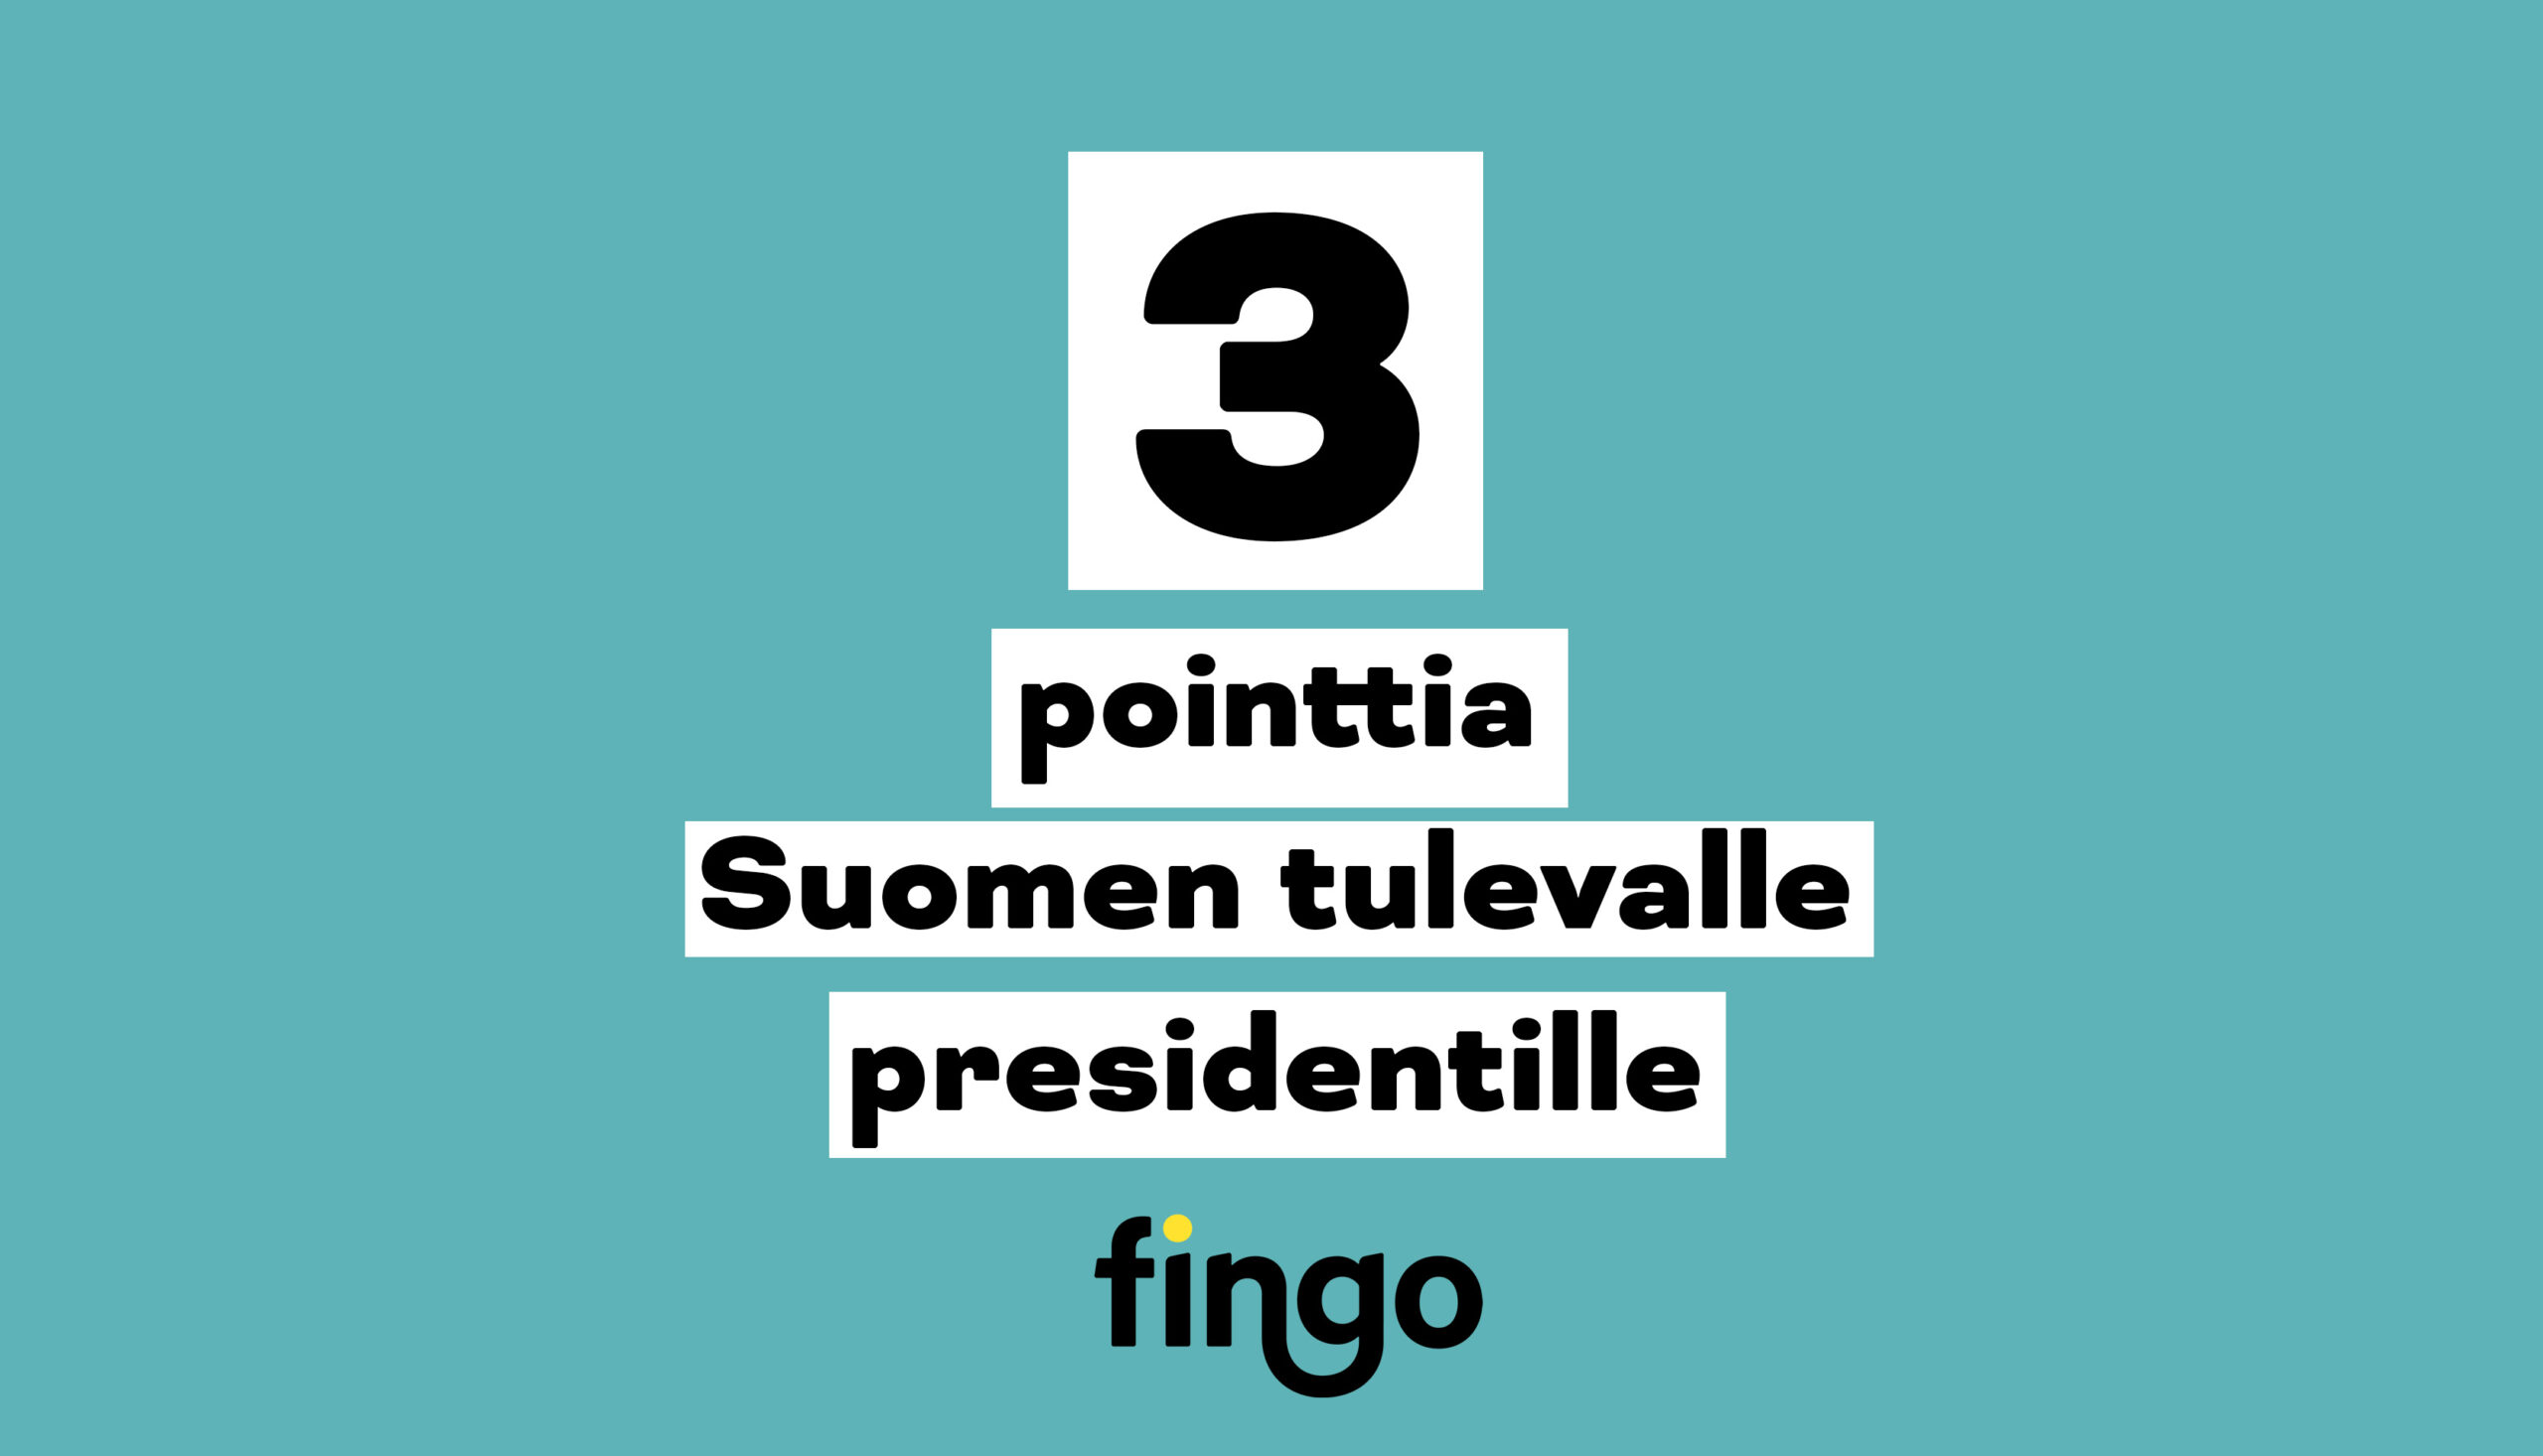 Vihreä tausta, otsikkoteksti: 3 pointtia Suomen tulevalle presidentille.